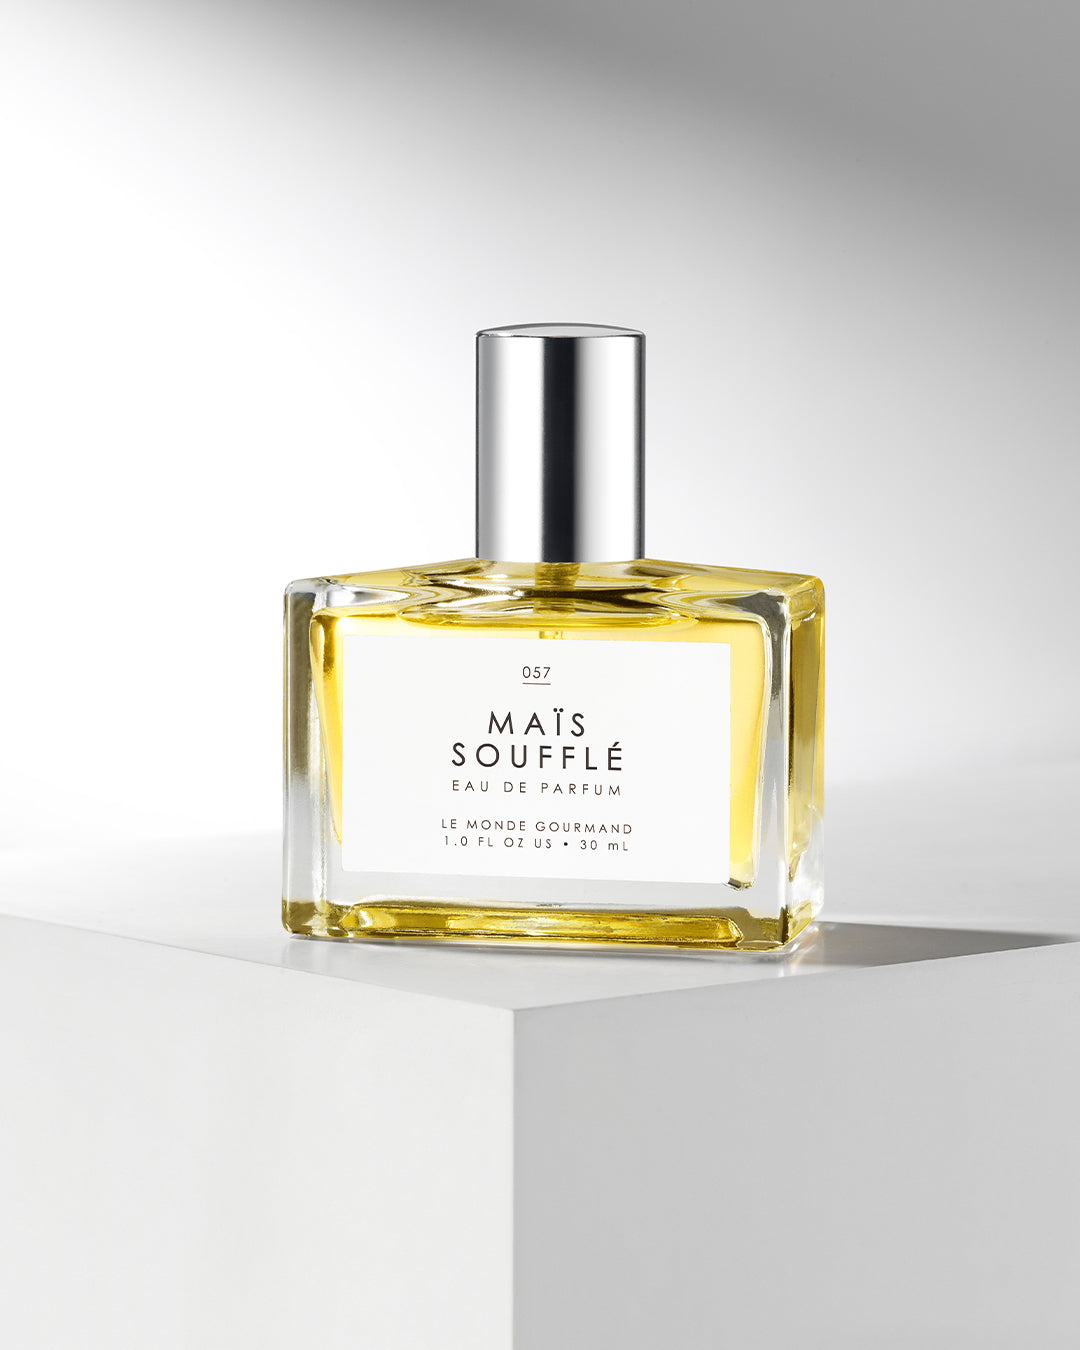 Eau de Lanvin Fragrances - Perfumes, Colognes, Parfums, Scents resource  guide - The Perfume Girl